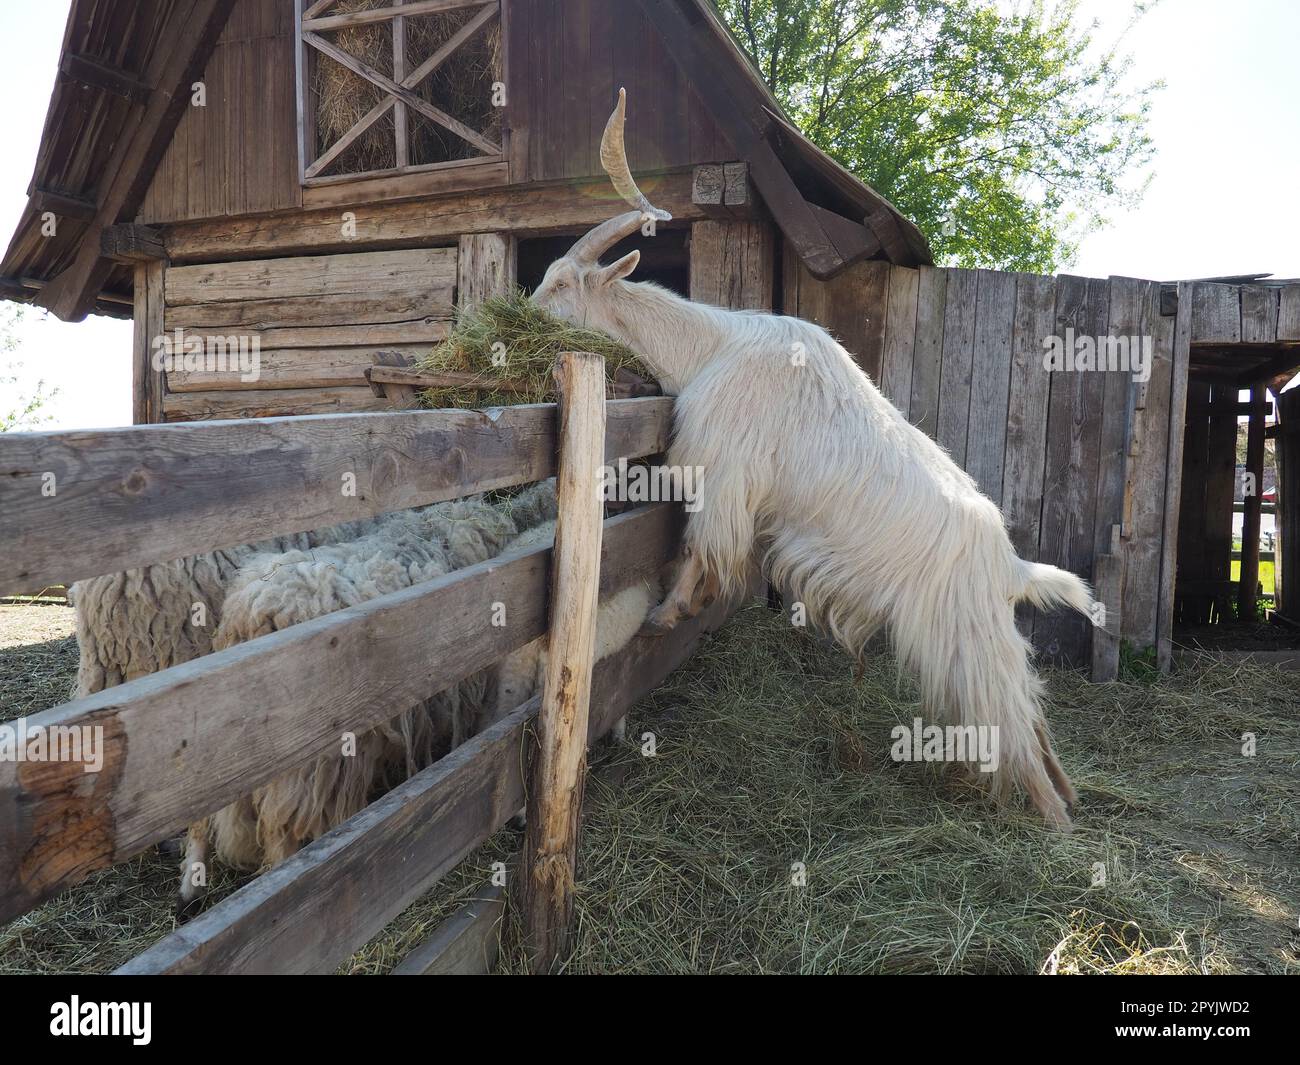 La chèvre domestique est Capra hircus, une espèce d'artiodactyles du genre Capra chèvres de montagne de la famille bovine. La chèvre se tient debout sur ses sabots arrière et mange du foin au-dessus d'une clôture en bois. Les moutons paissent Banque D'Images